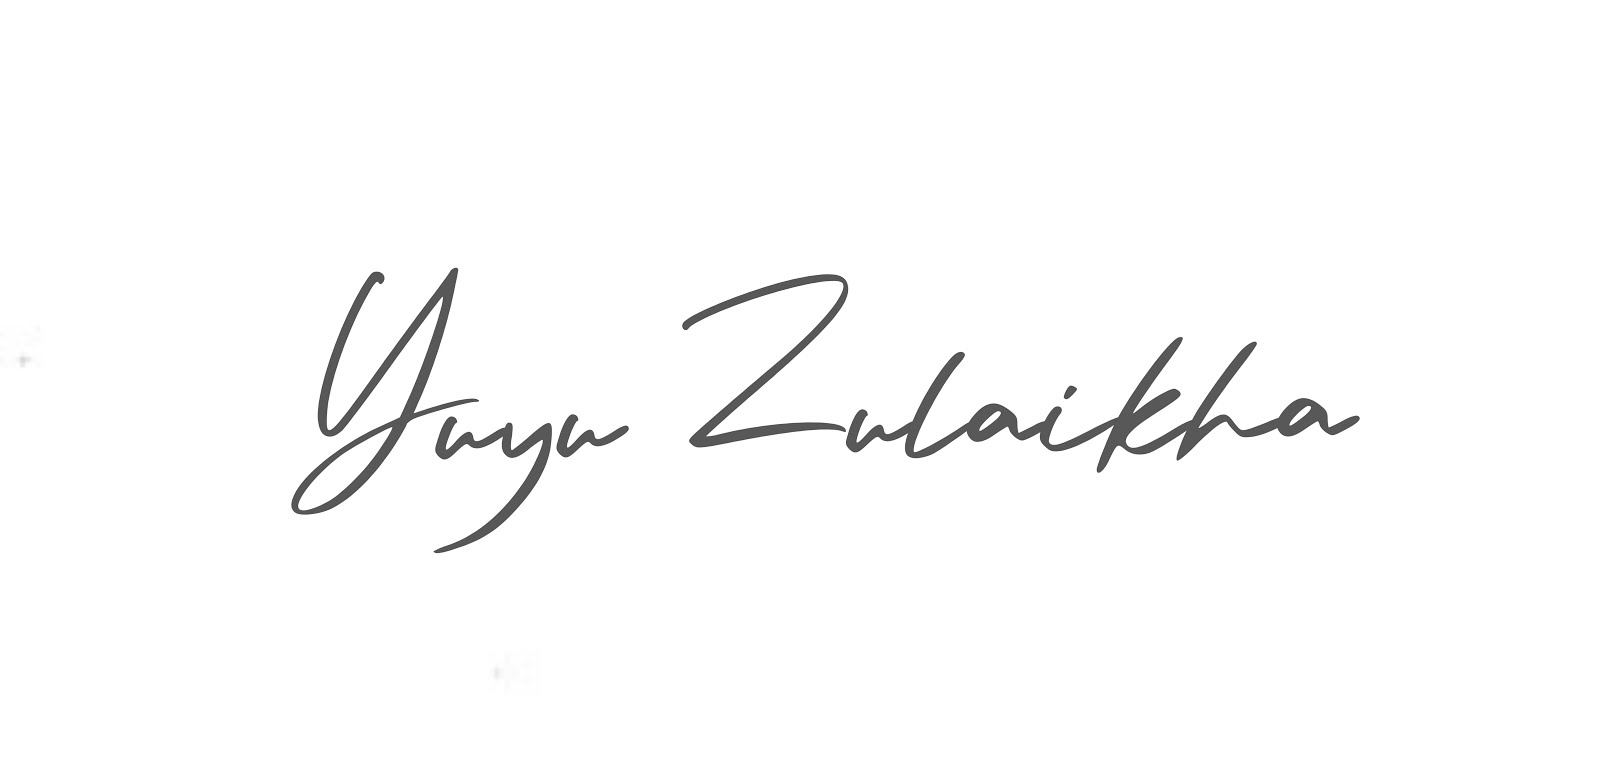 Yuyu Zulaikha 